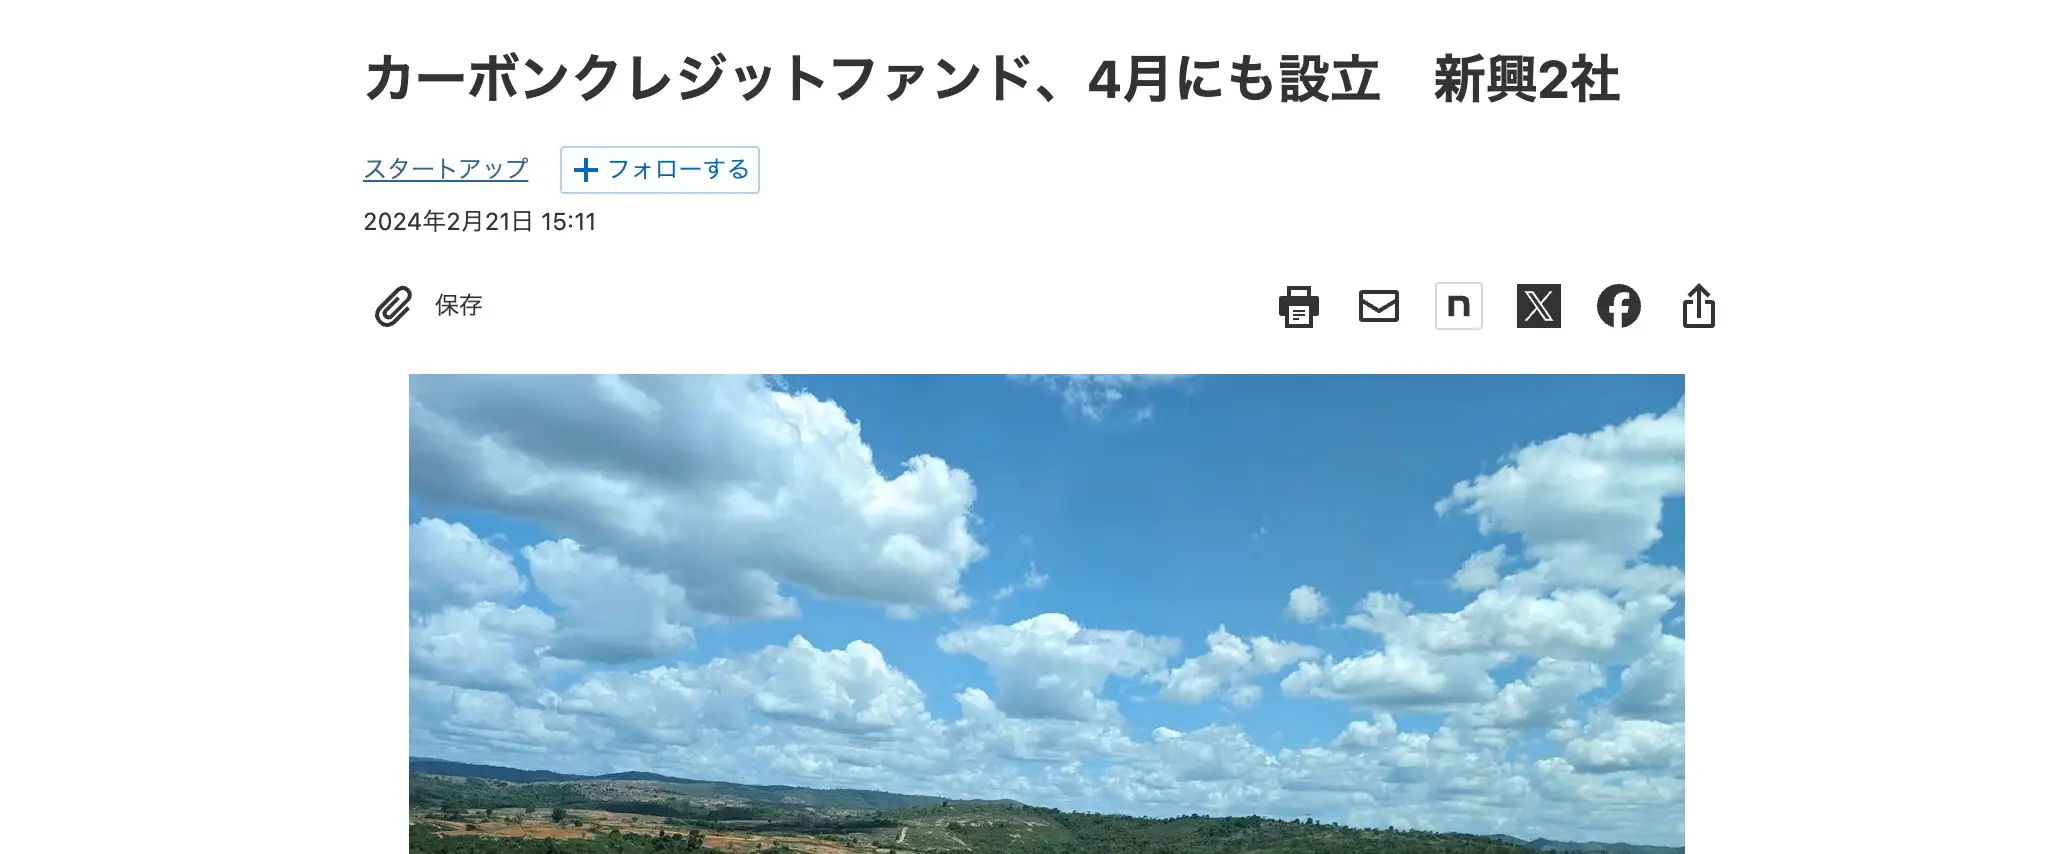 sustainacraft got featured on Nikkei (in Japanese)